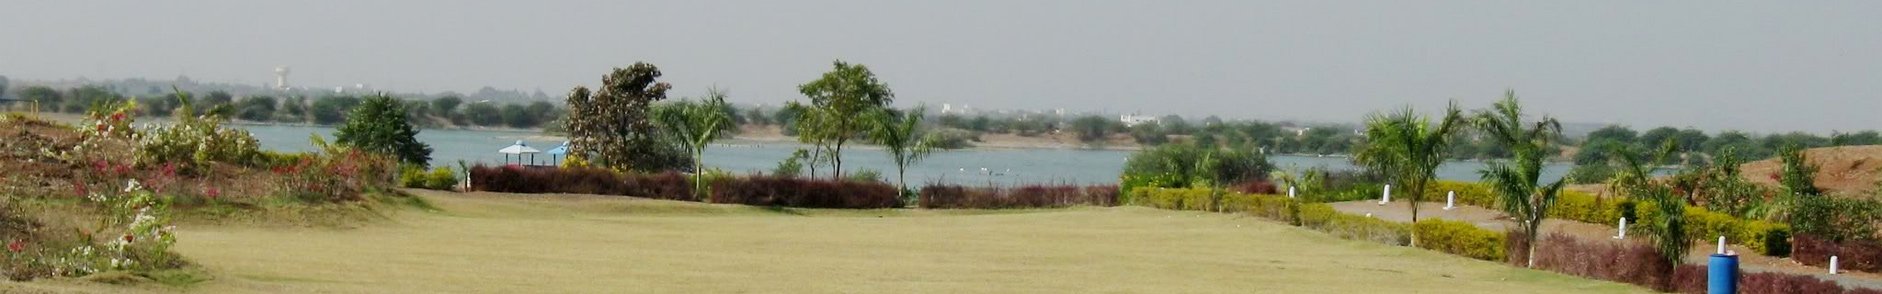 Rashtriya Shala Rajkot, Gujarat